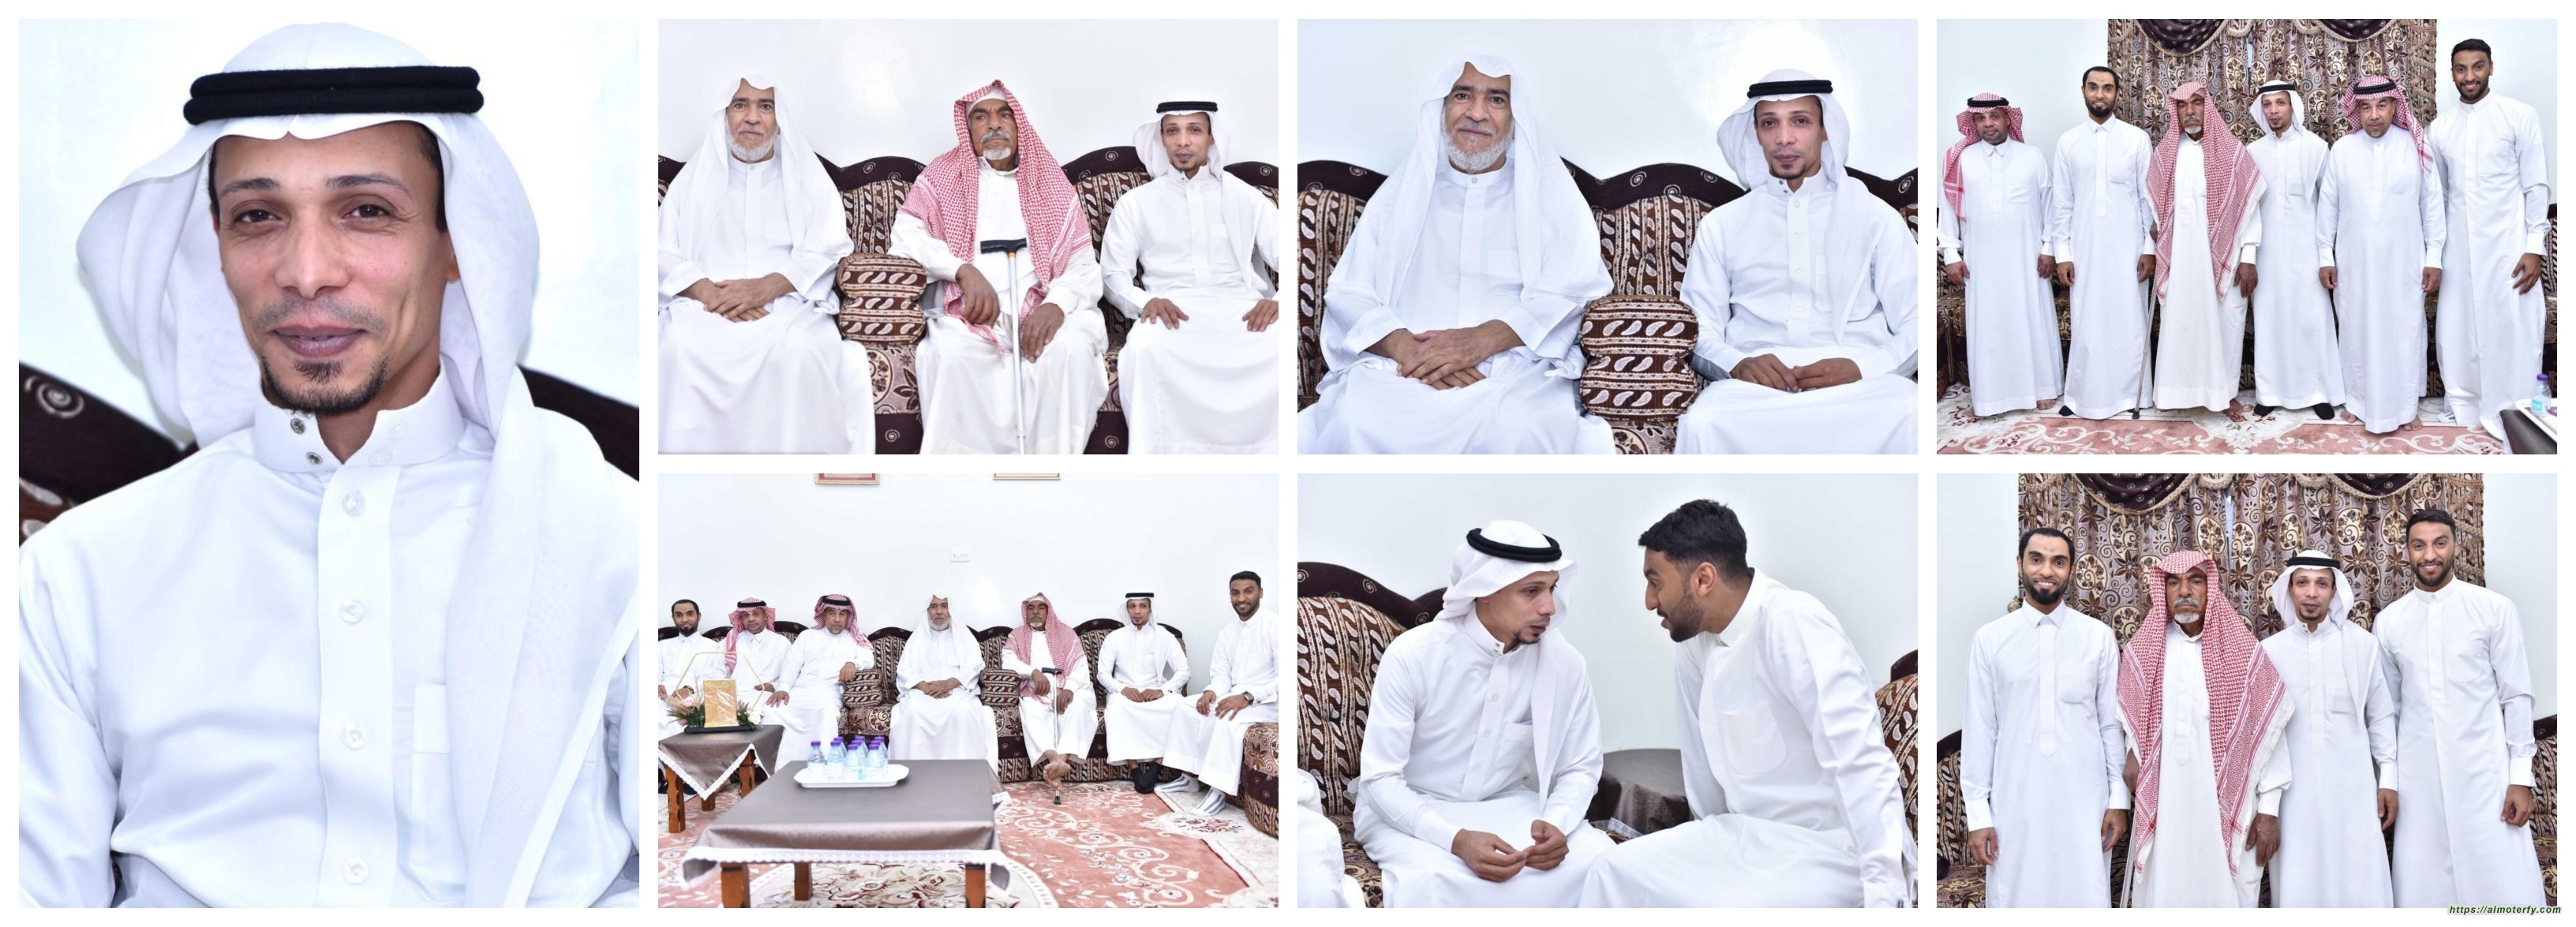 أسرة الحاجي و البراهيم تحتفل بعقد قران "عبدالعزيز"